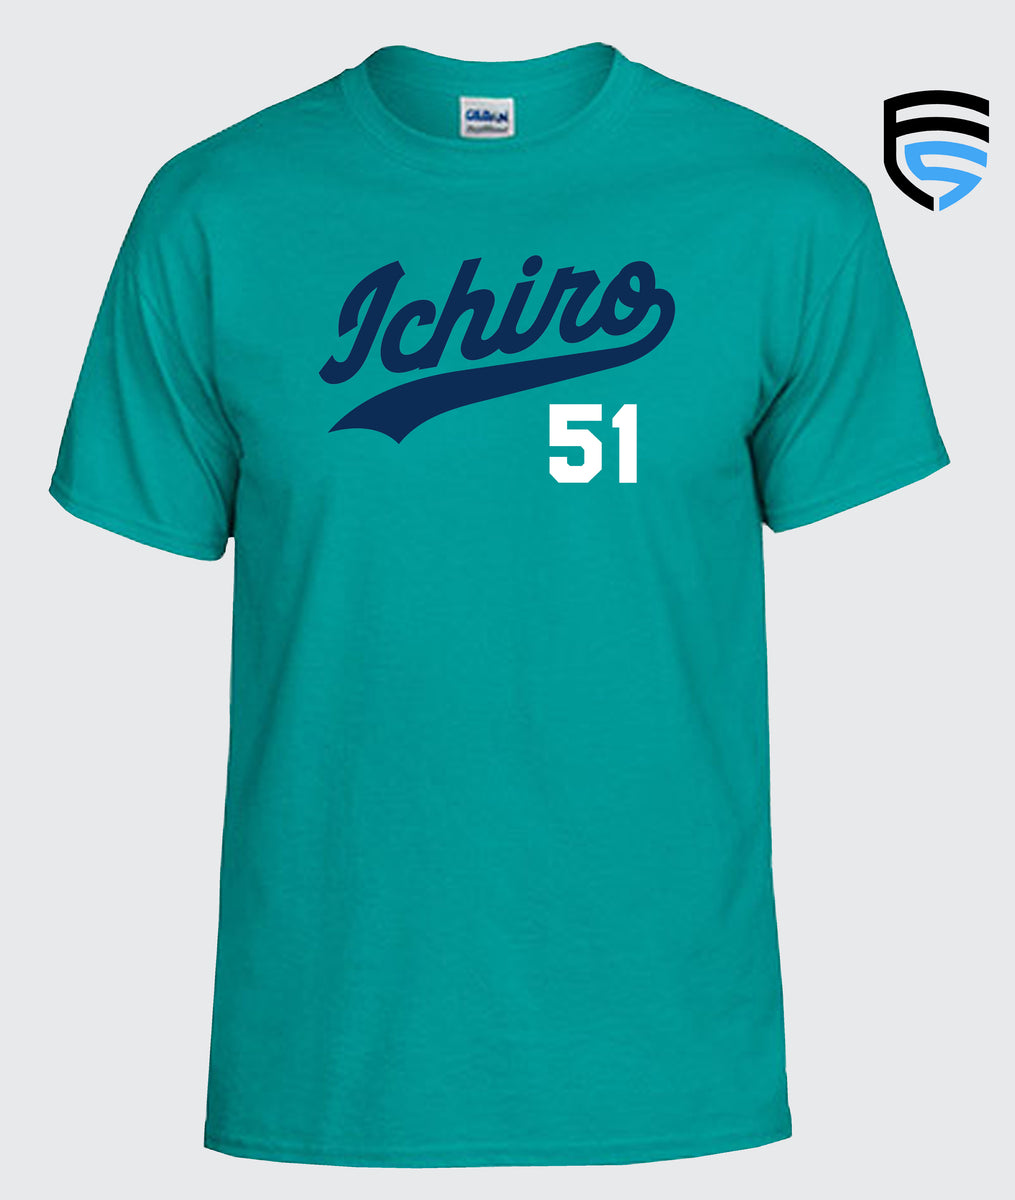 Ichiro 51 2004 Seattle Mariners Dynasty Baseball T-Shirt